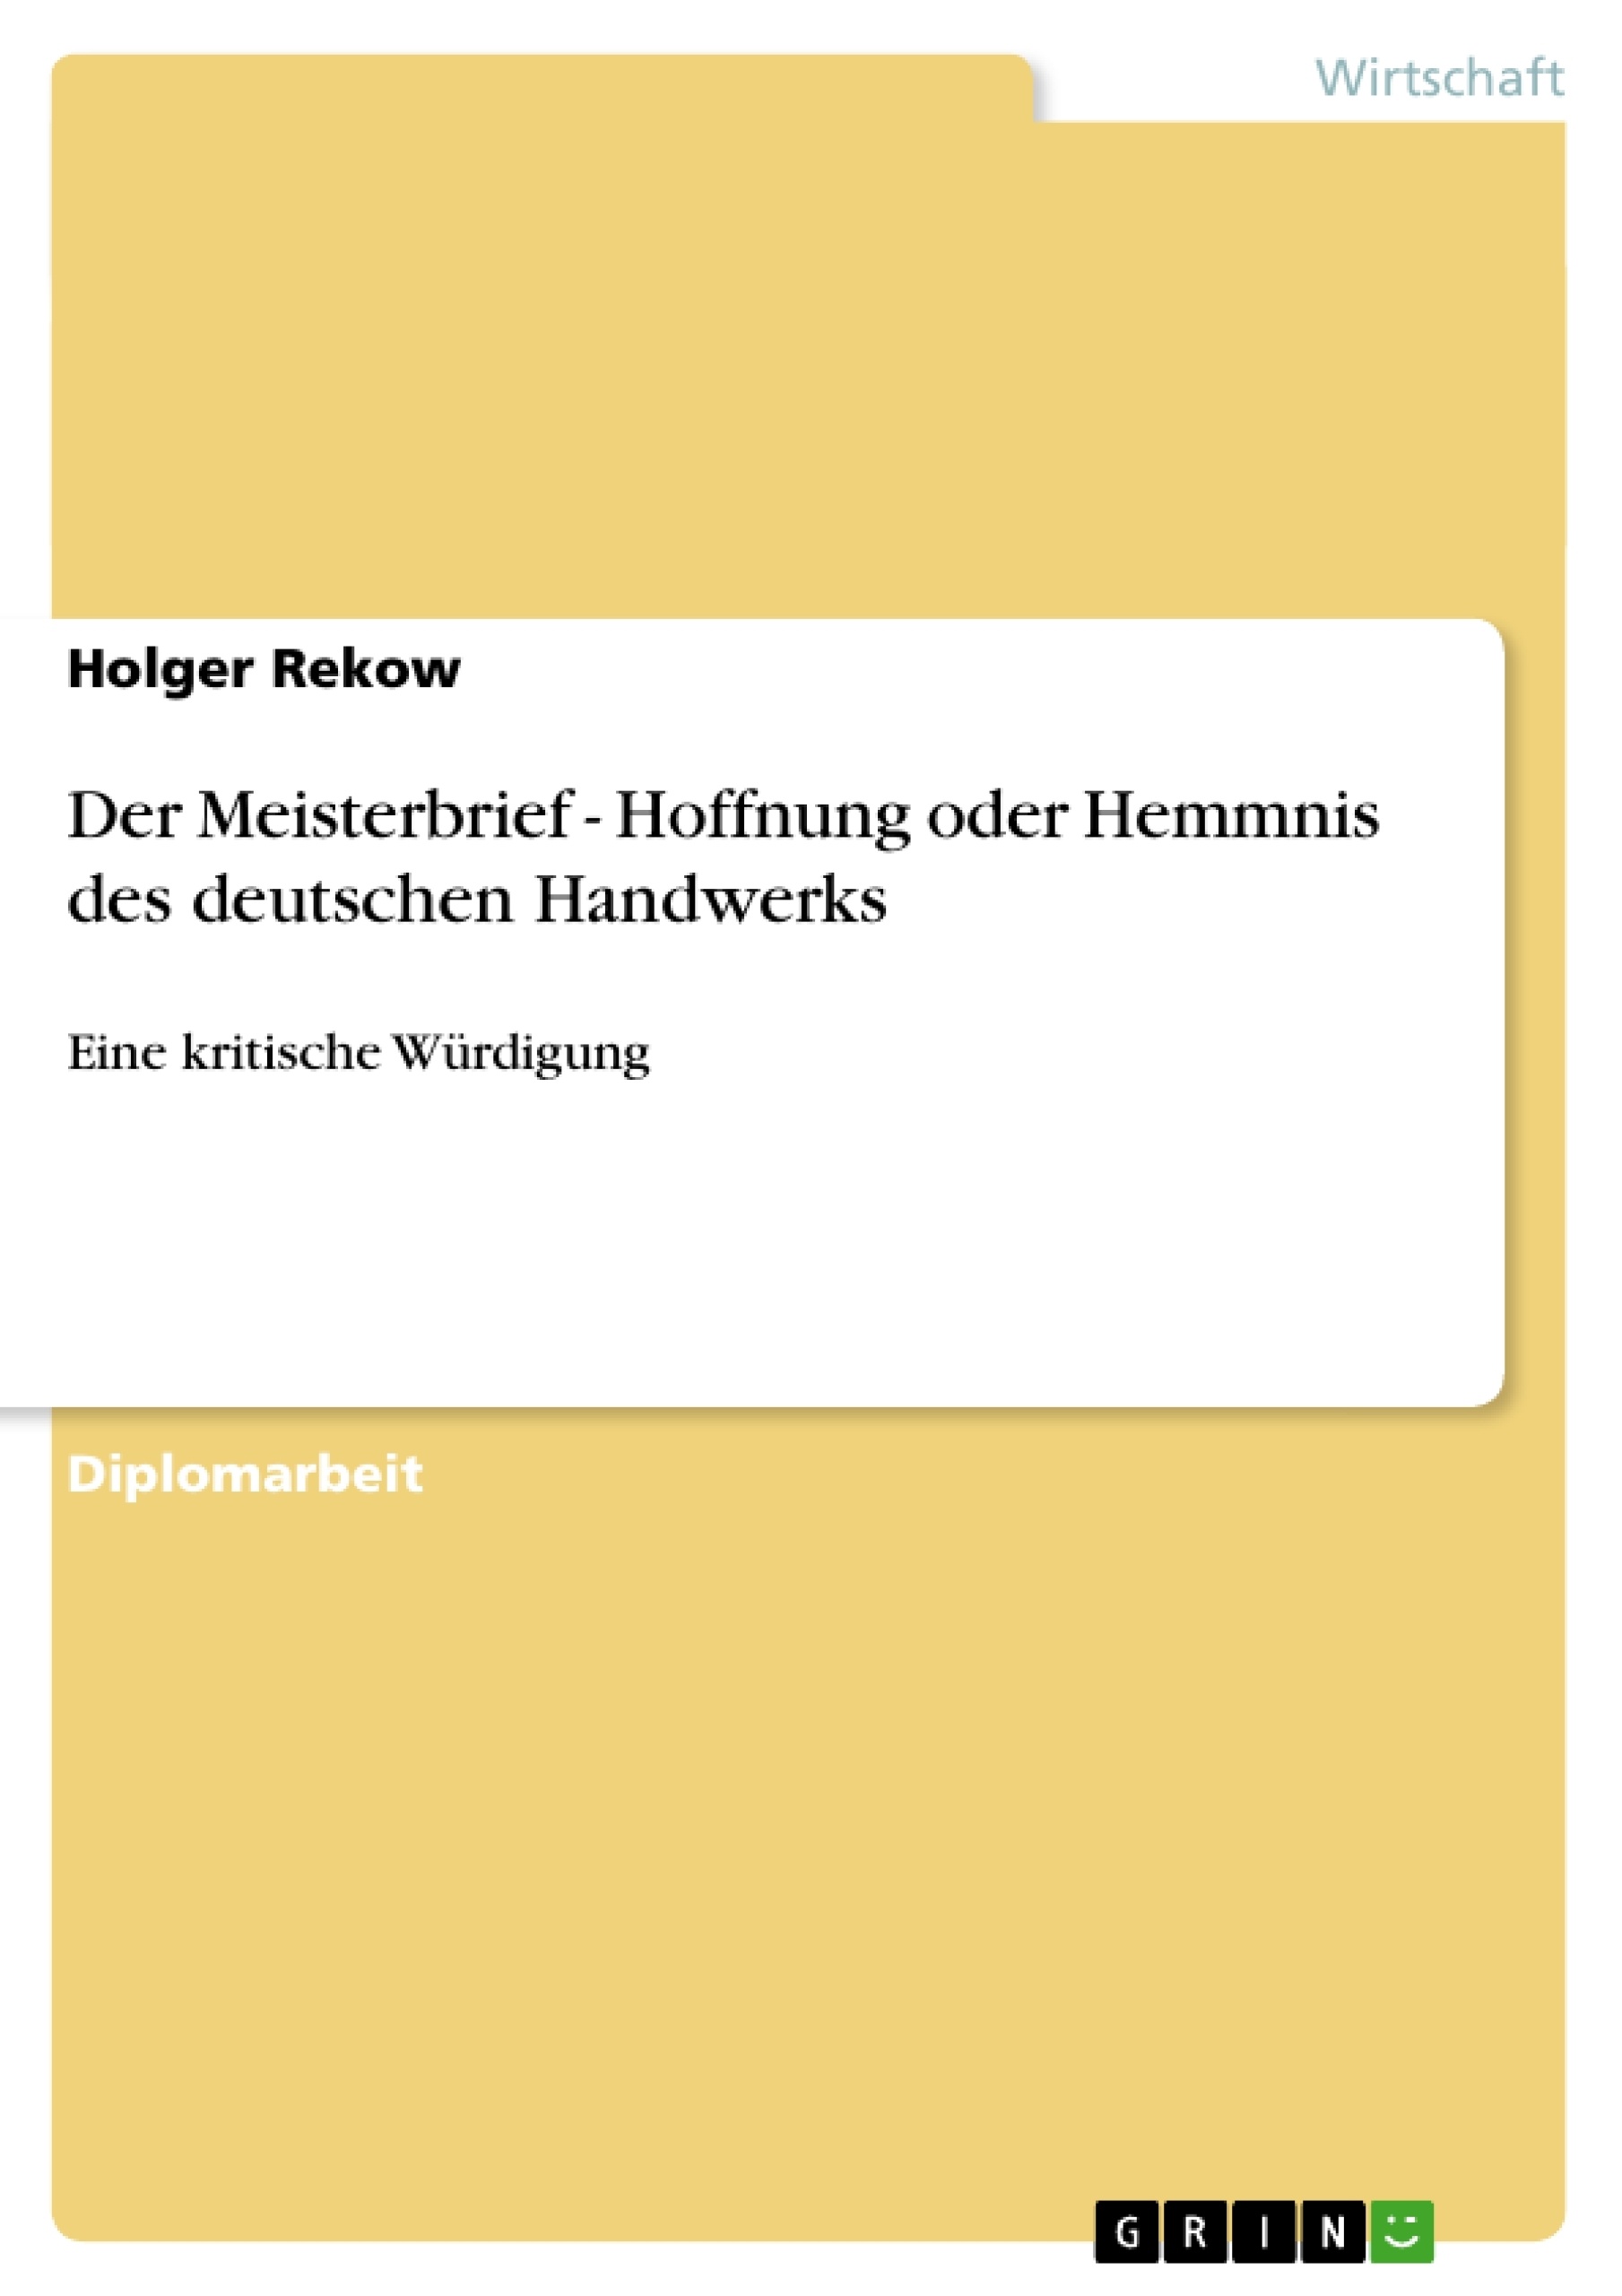 Title: Der Meisterbrief - Hoffnung oder Hemmnis des deutschen Handwerks